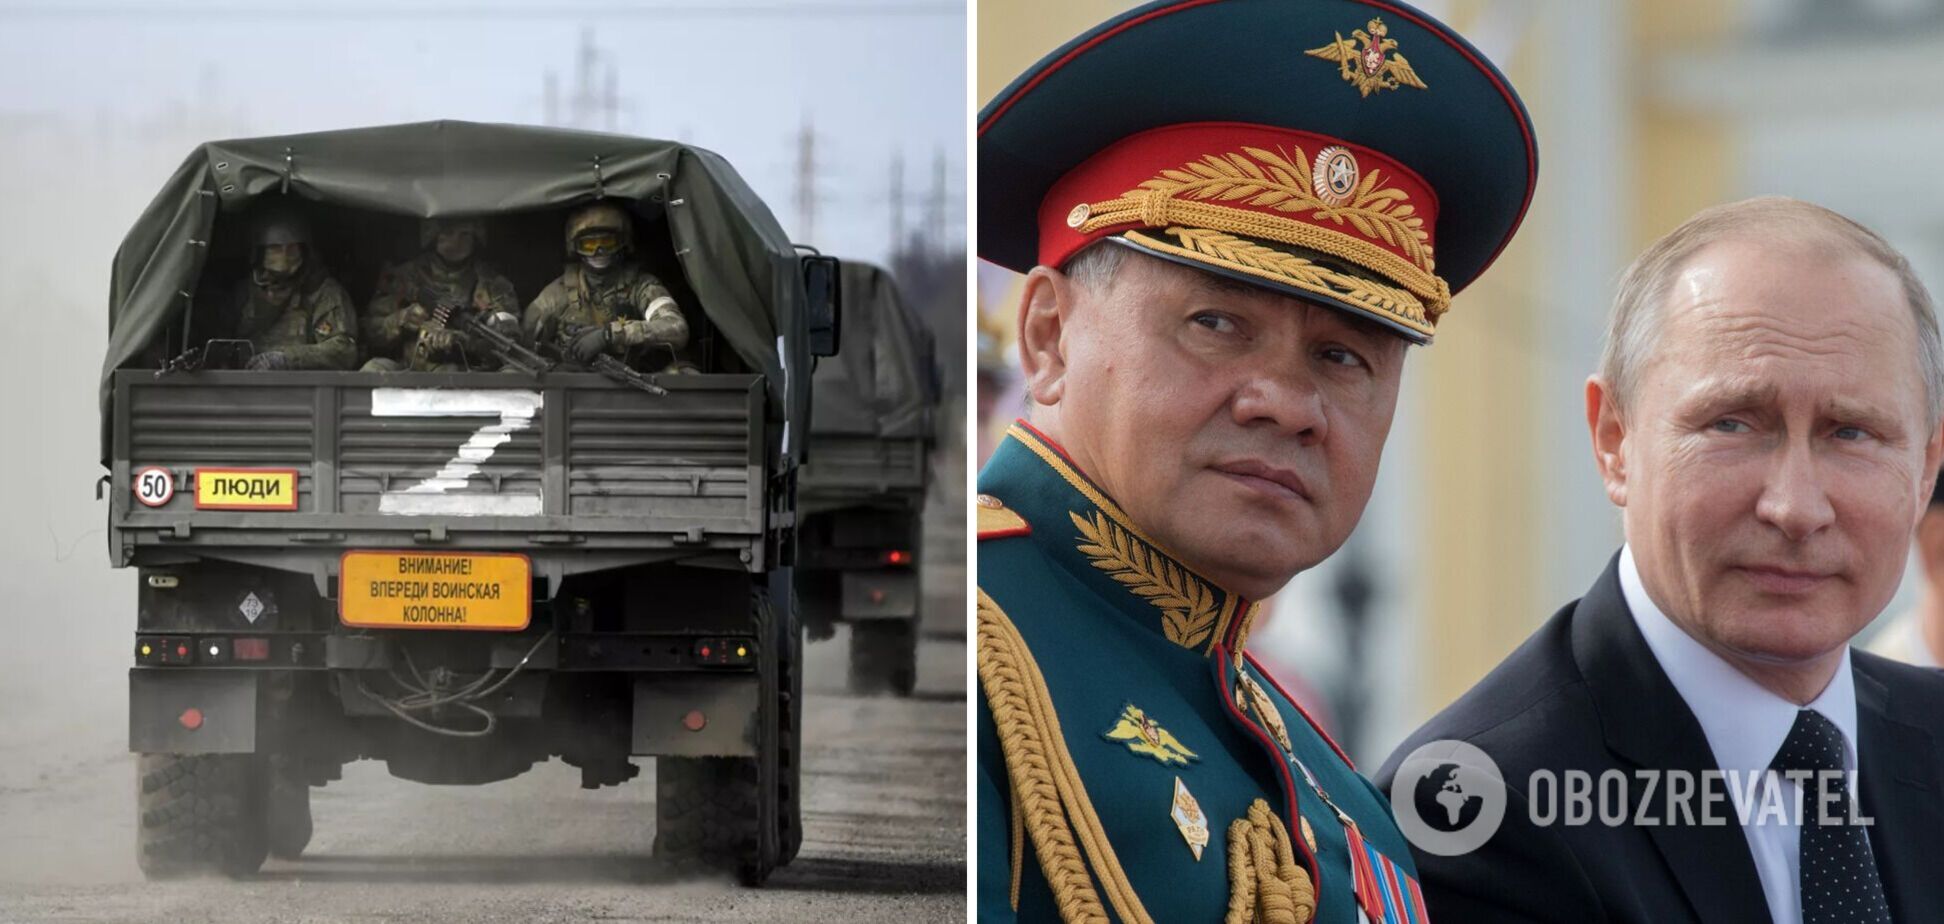 'Путін – с*ка' та 'Шойгу – профан': в Україні перехопили розмову російських військових, які критикують керівництво армії РФ